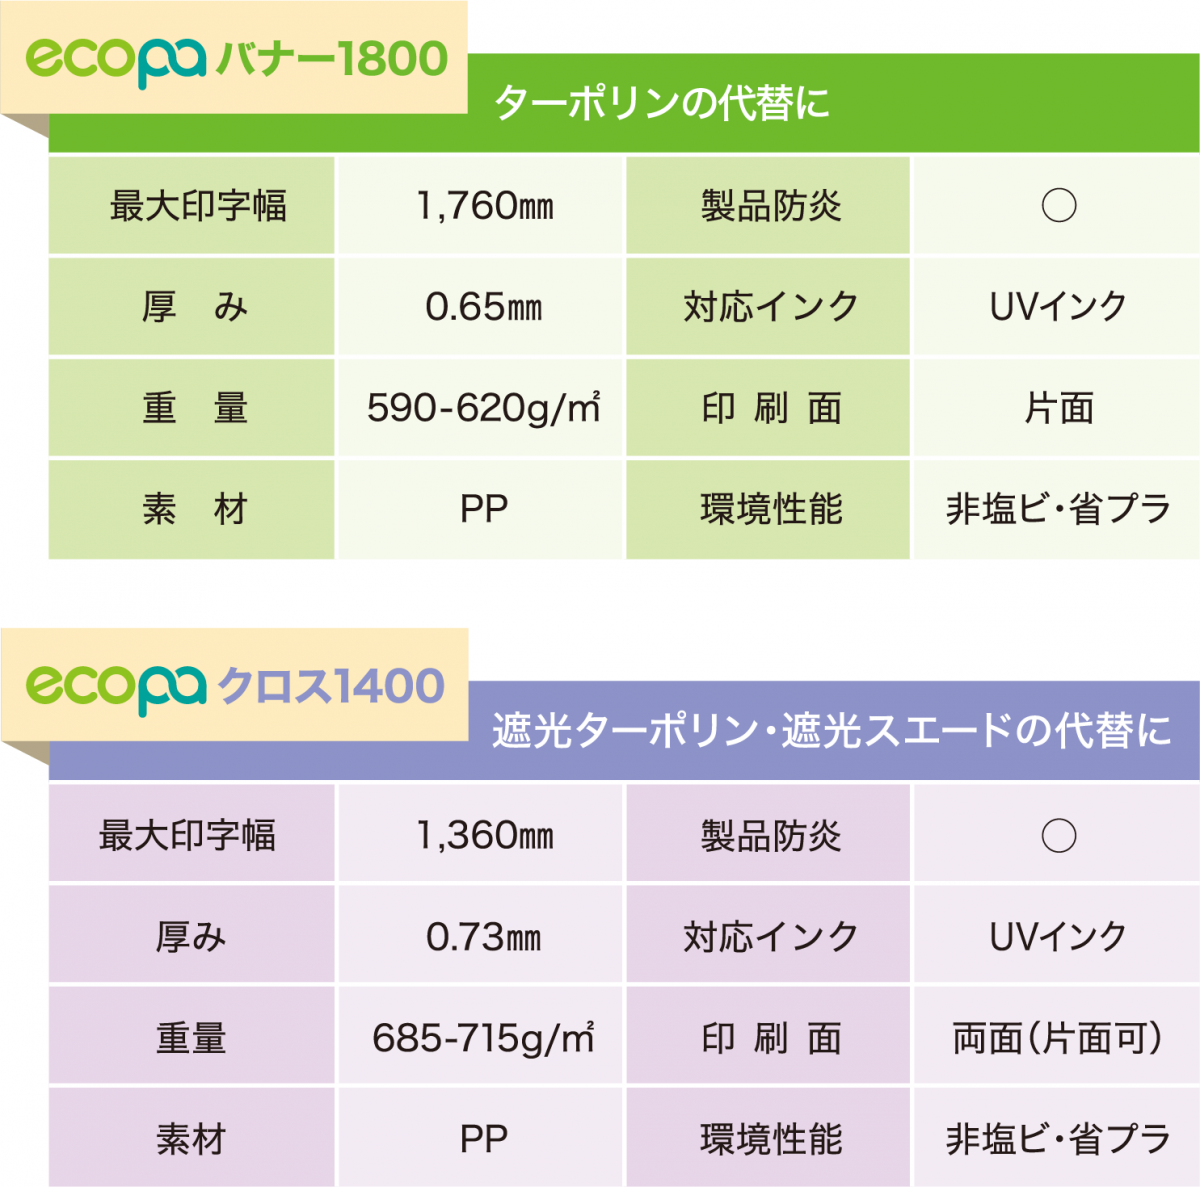 ecopaバナー・クロス製品情報